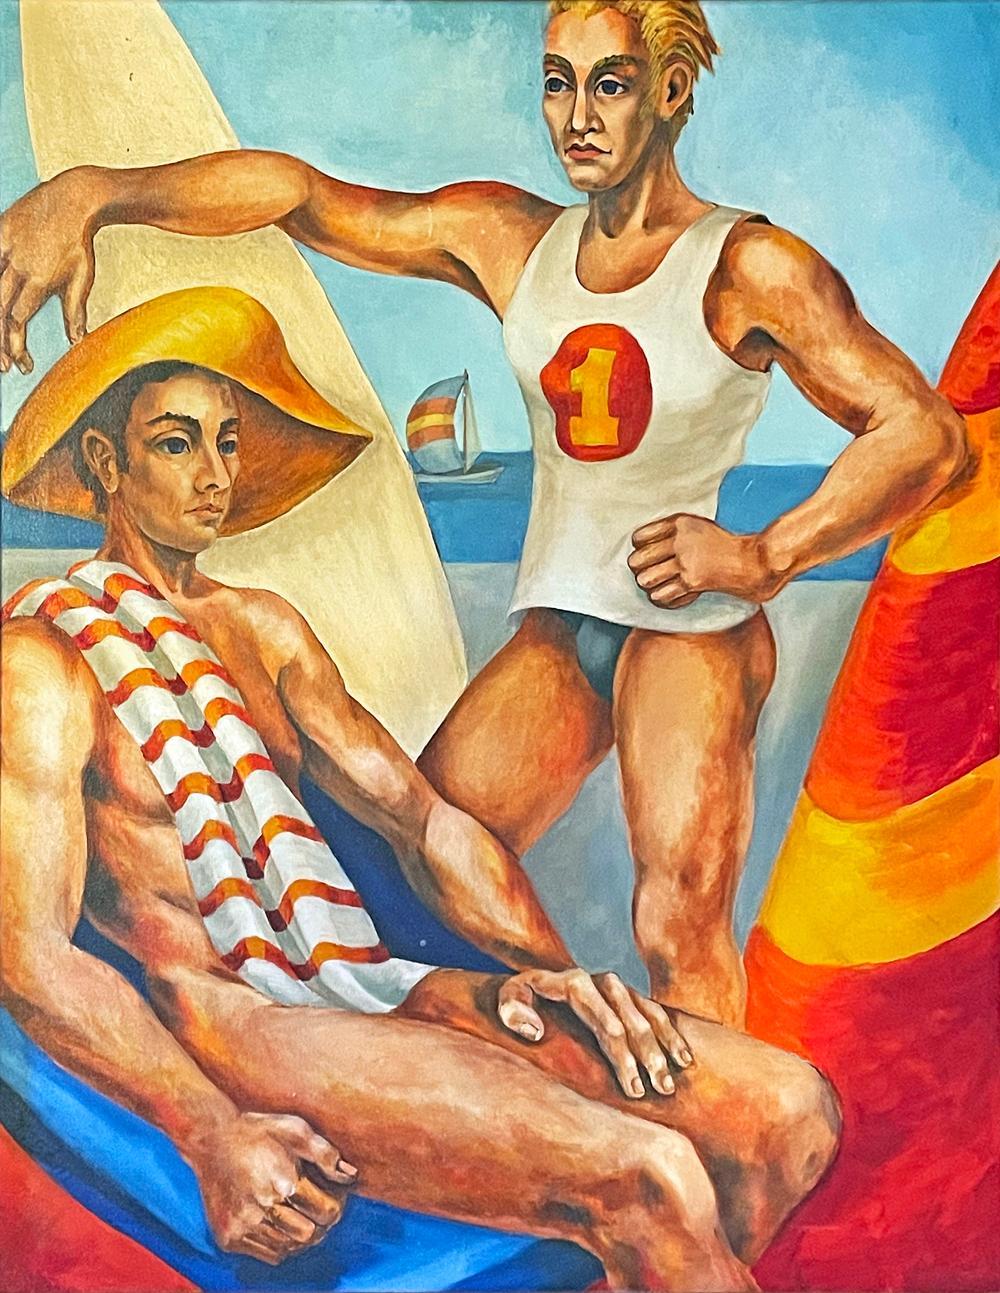 Saturée de couleurs primaires audacieuses - rouge profond, jaune brillant et bleu ciel - cette scène représente un maître-nageur blond debout, avec sa planche de surf d'un côté et un parapluie rayé de l'autre, accompagné d'un homme nu assis coiffé